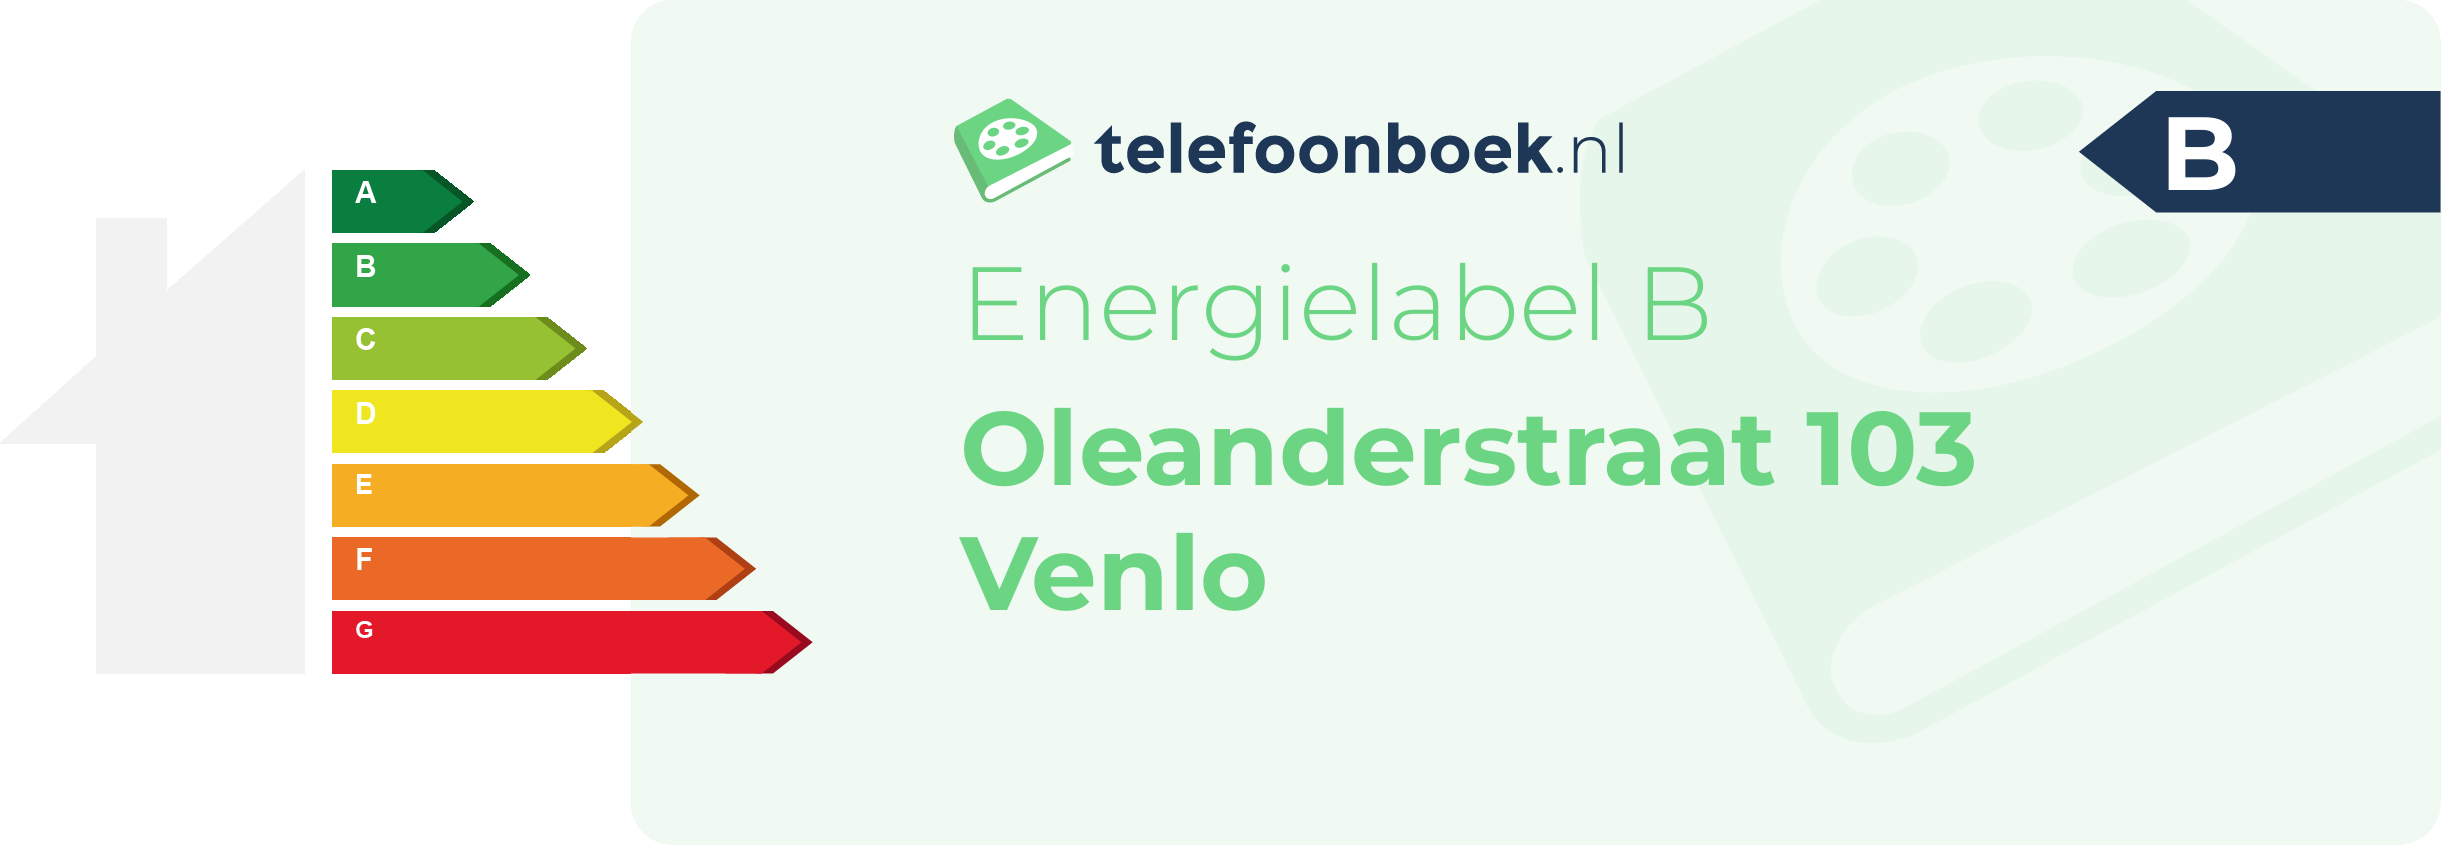 Energielabel Oleanderstraat 103 Venlo